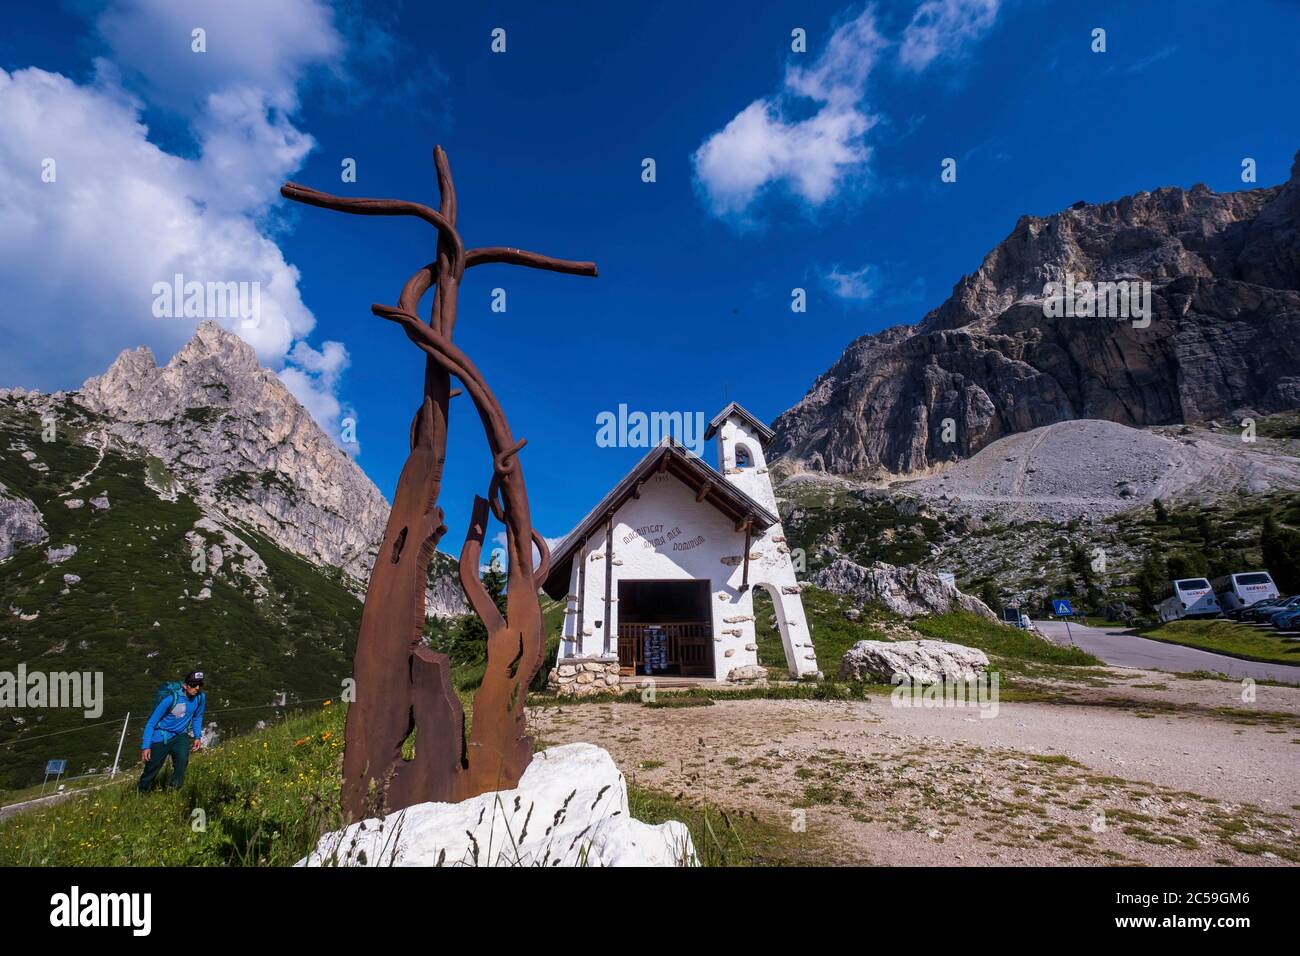 Italie, Venetia, Cortina d'Ampezzo, Dolomites ampezzan, classée au patrimoine mondial de l'UNESCO, col de Falzarego, chapelle de Falzarego et chaîne Lagazuoi Banque D'Images